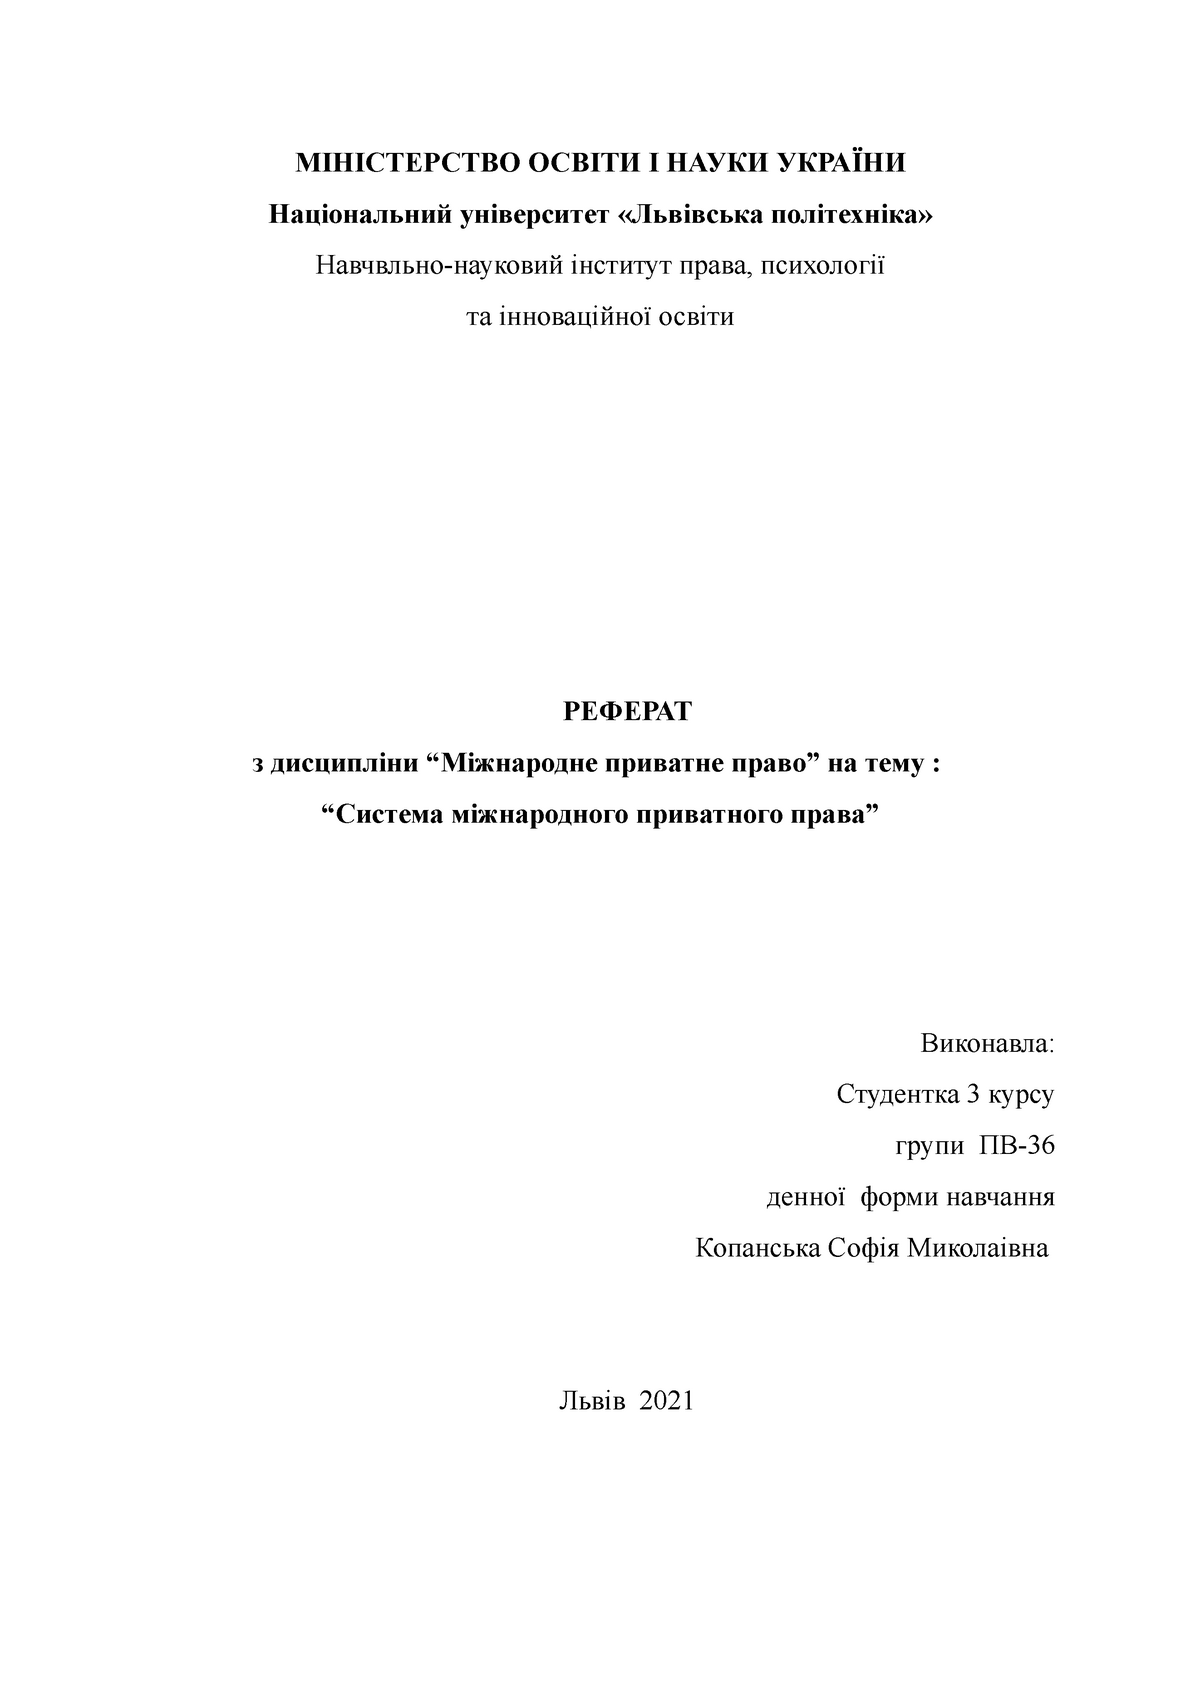 Реферат: Колізійне законодавство України стосовно регулювання шлюбно-сімейних відносин